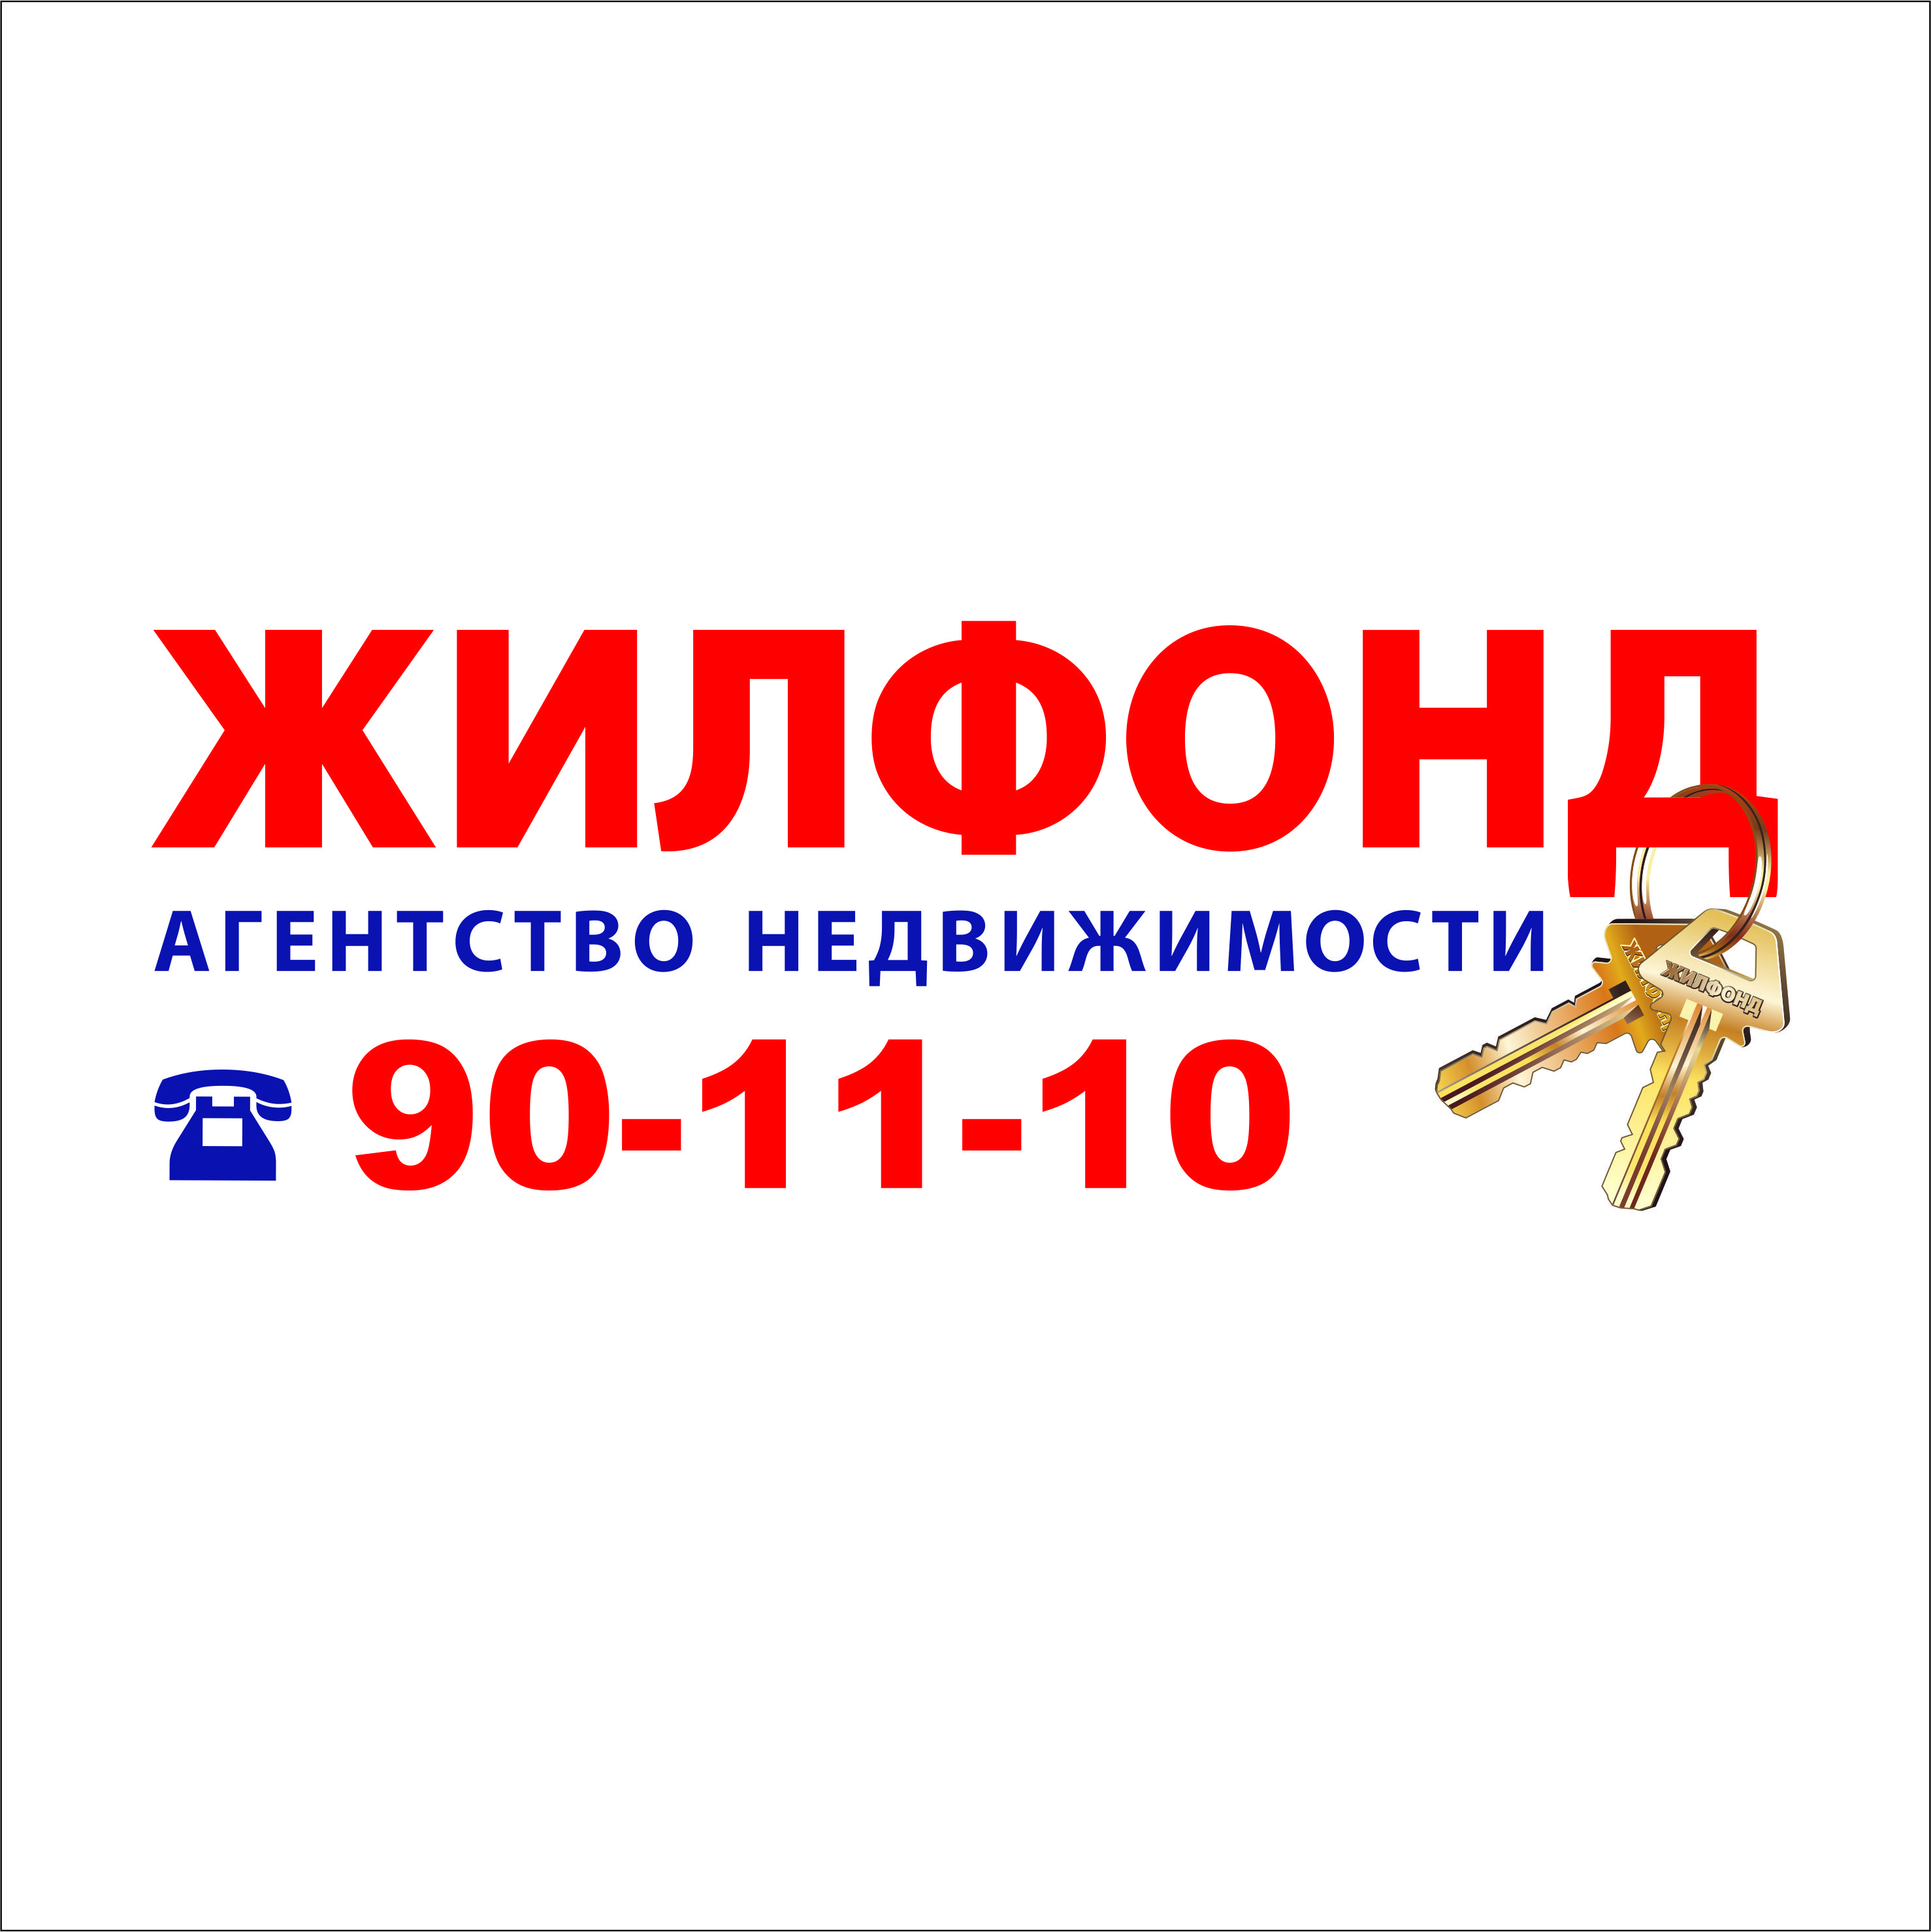 Специализированный жил фонд. Жилфонд лого. Логотипы агентств недвижимости Новосибирска. Визитка Жилфонд. Жилфонд картинки.